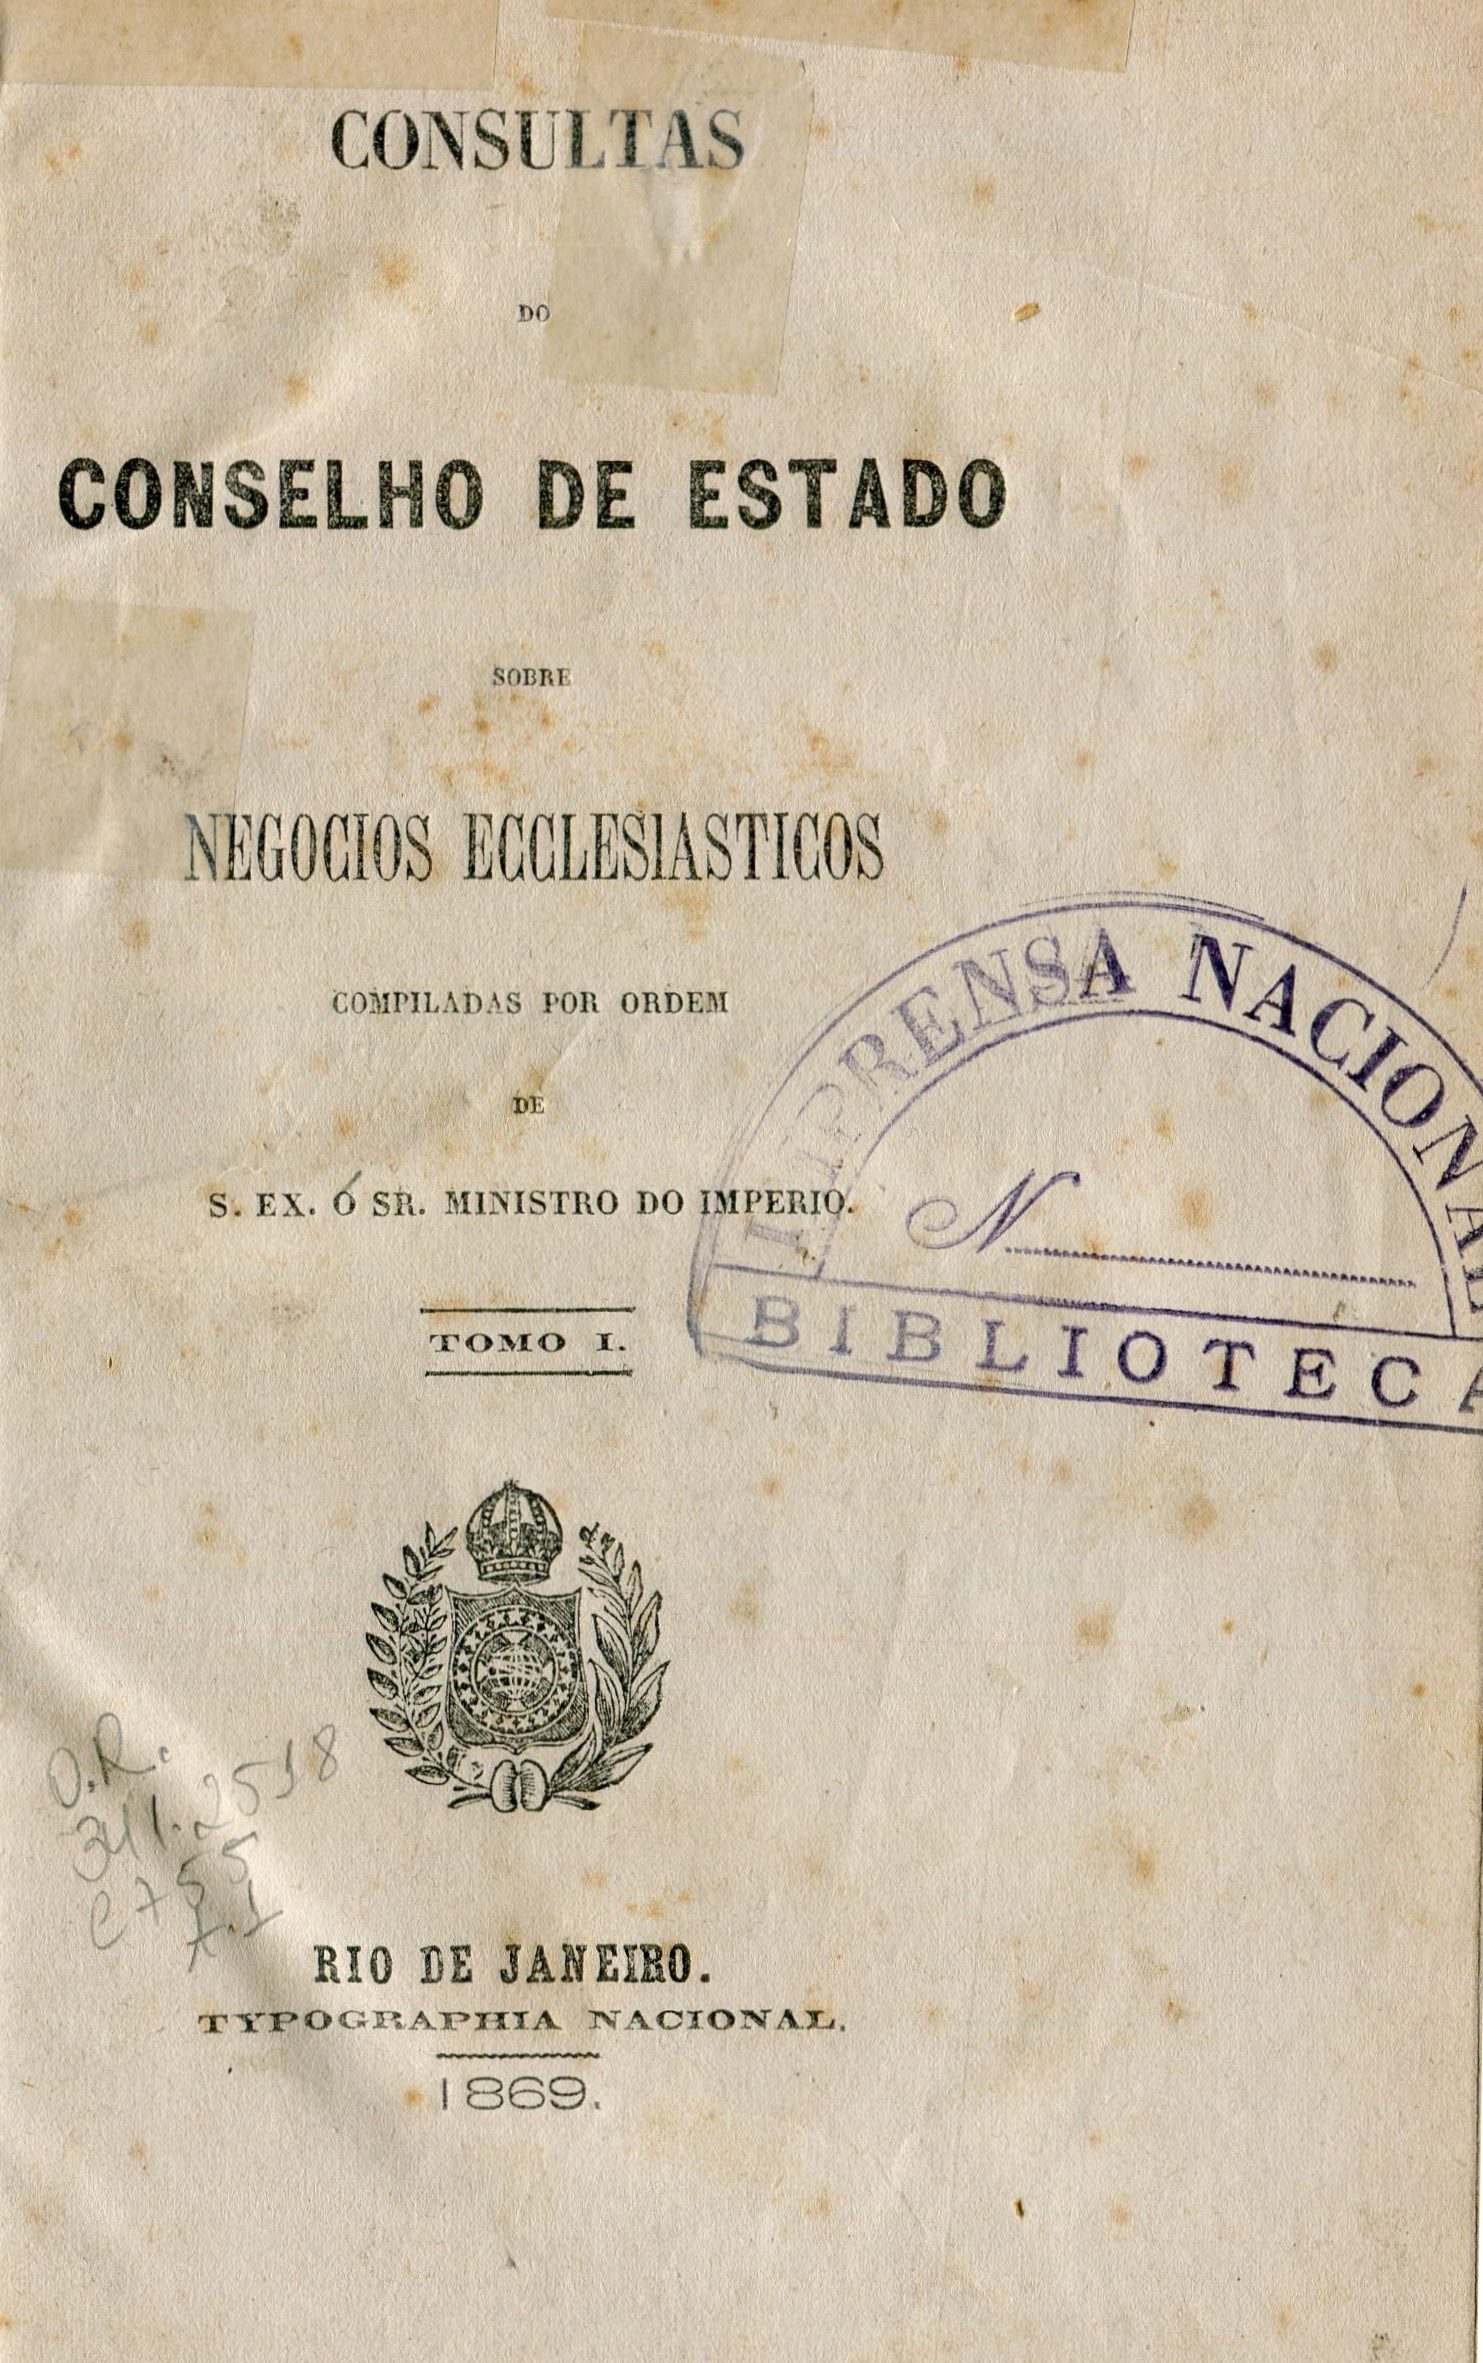 Capa do Livro Consultas do Conselho de Estado sobre Negócios Ecclesiásticos - Tomo I